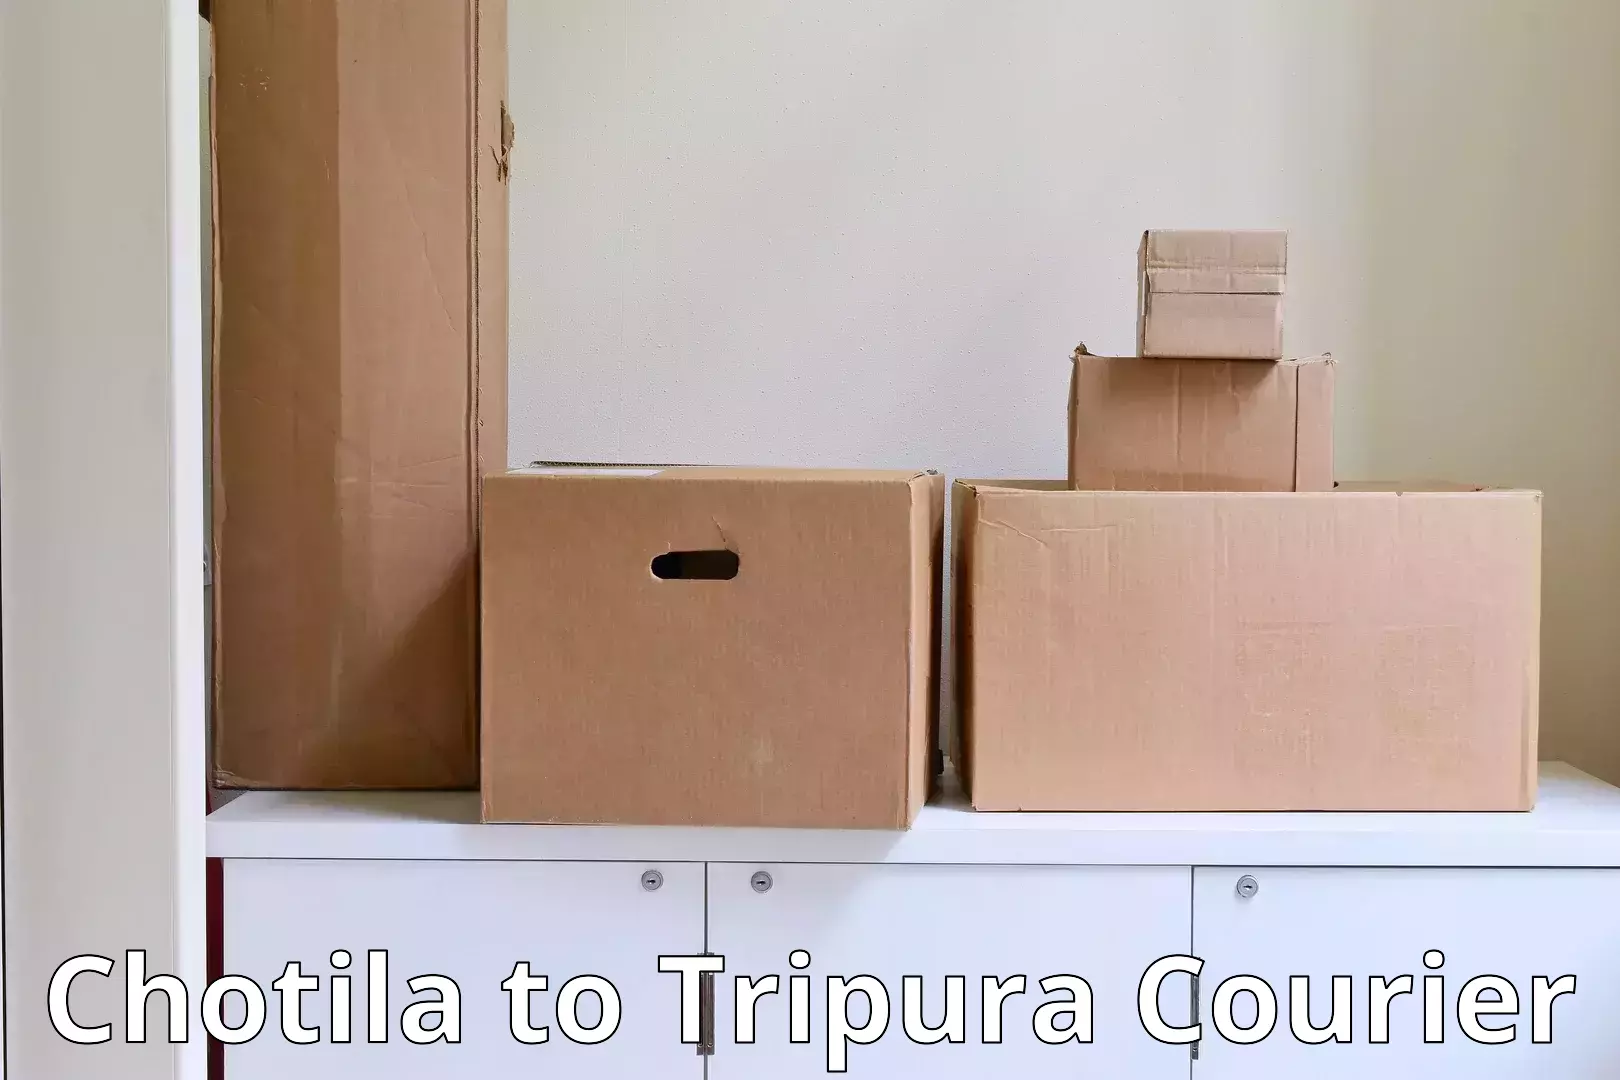 Premium furniture transport in Chotila to Tripura